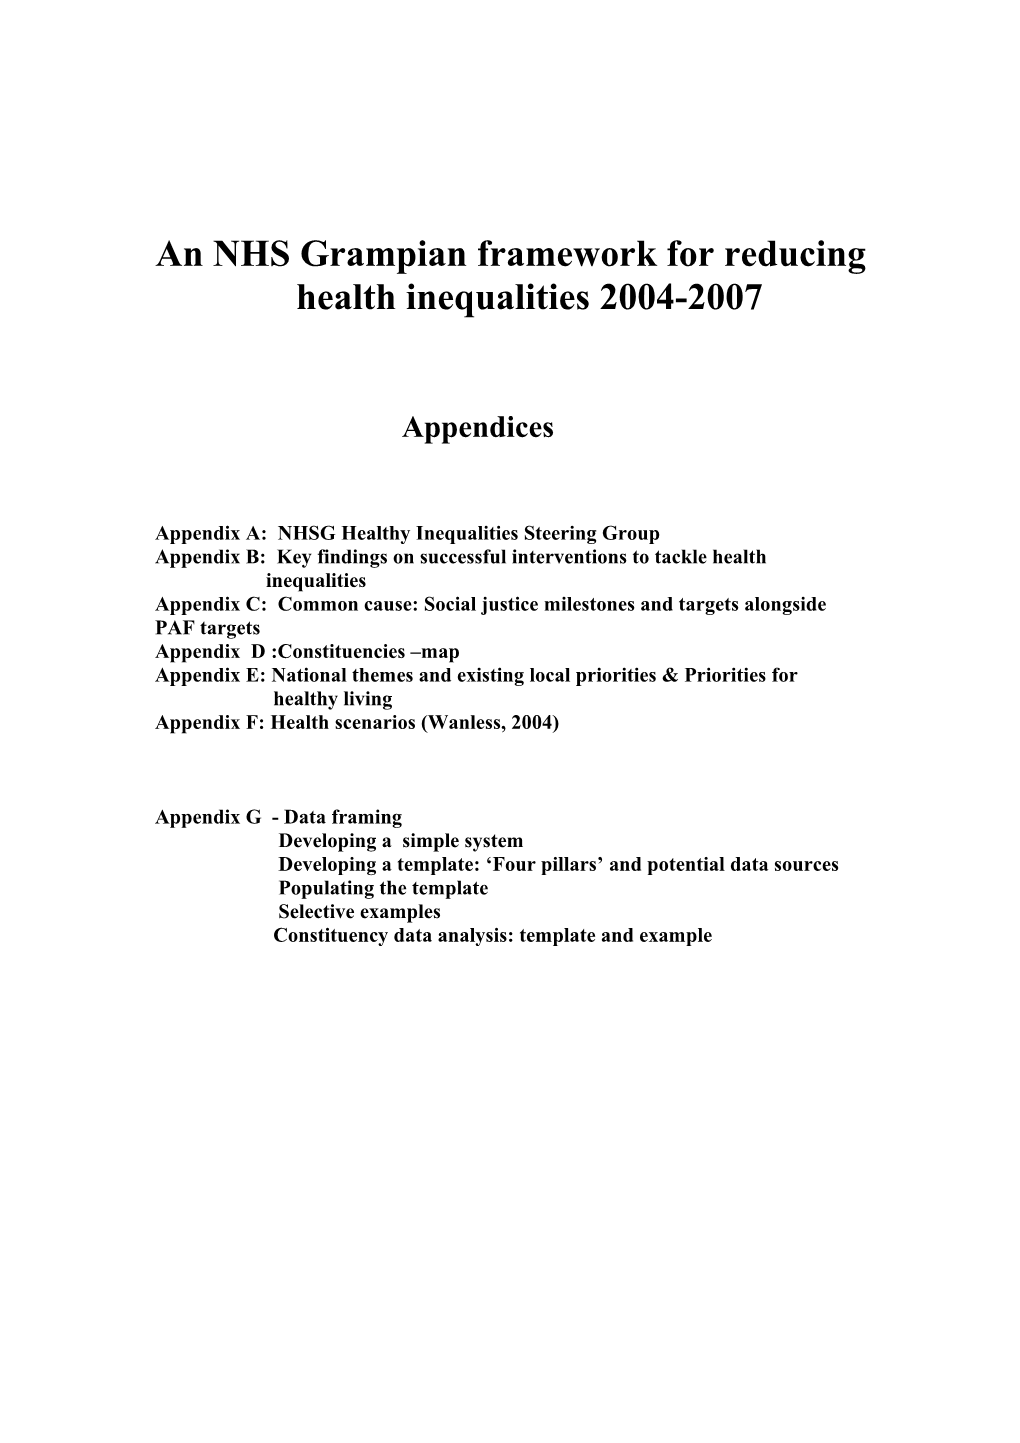 An NHS Grampian Framework for Reducing Health Inequalities 2004-2007